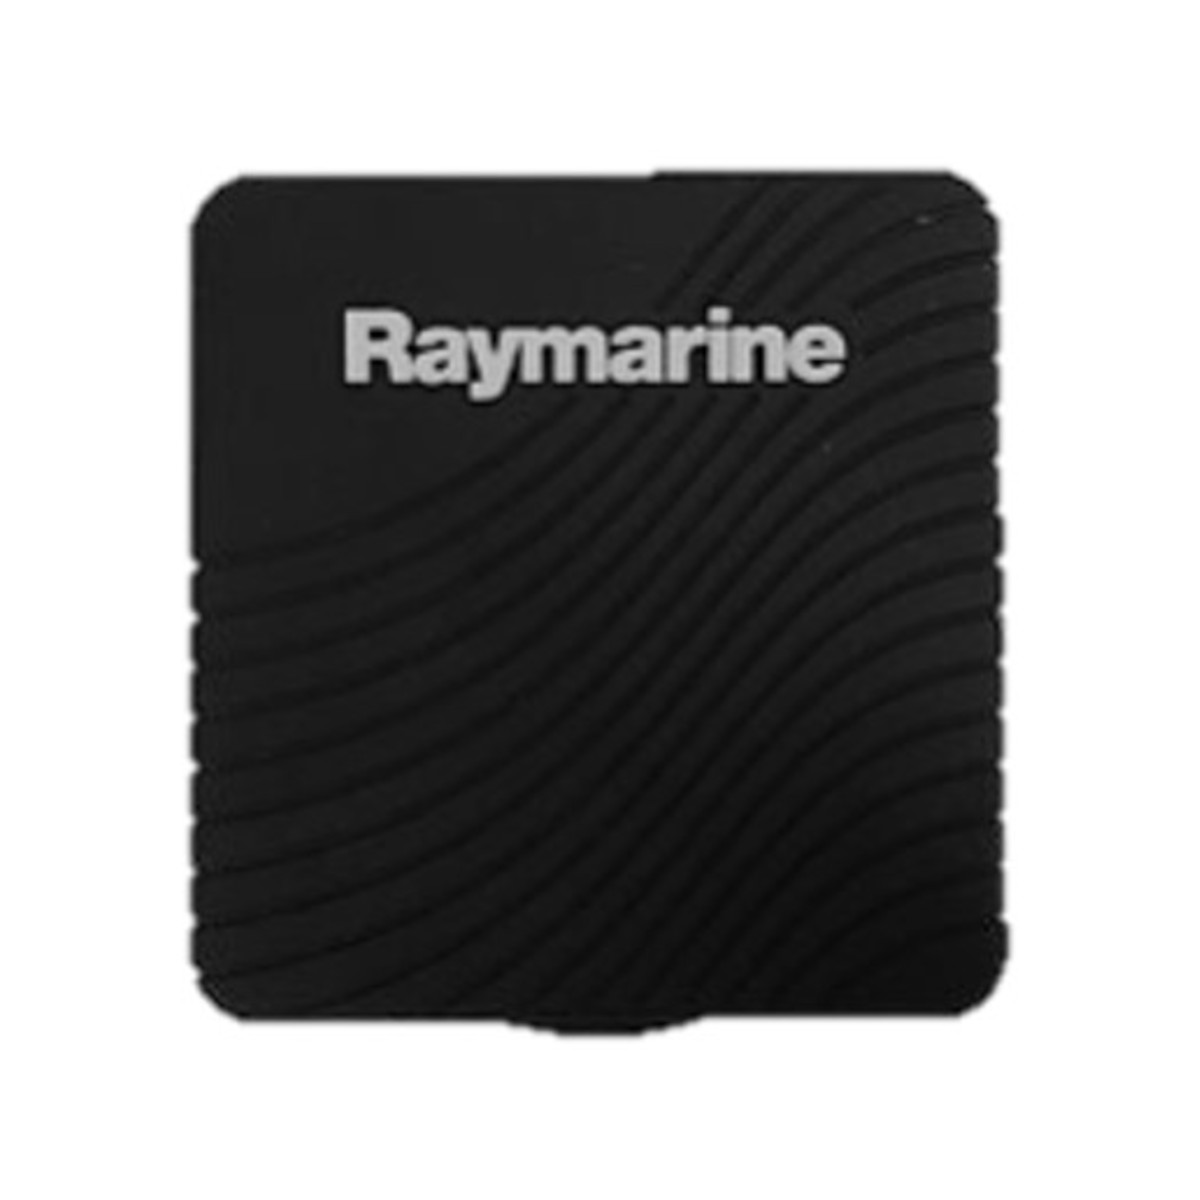 Raymarine capot de protection pour i50/60/70 - noir